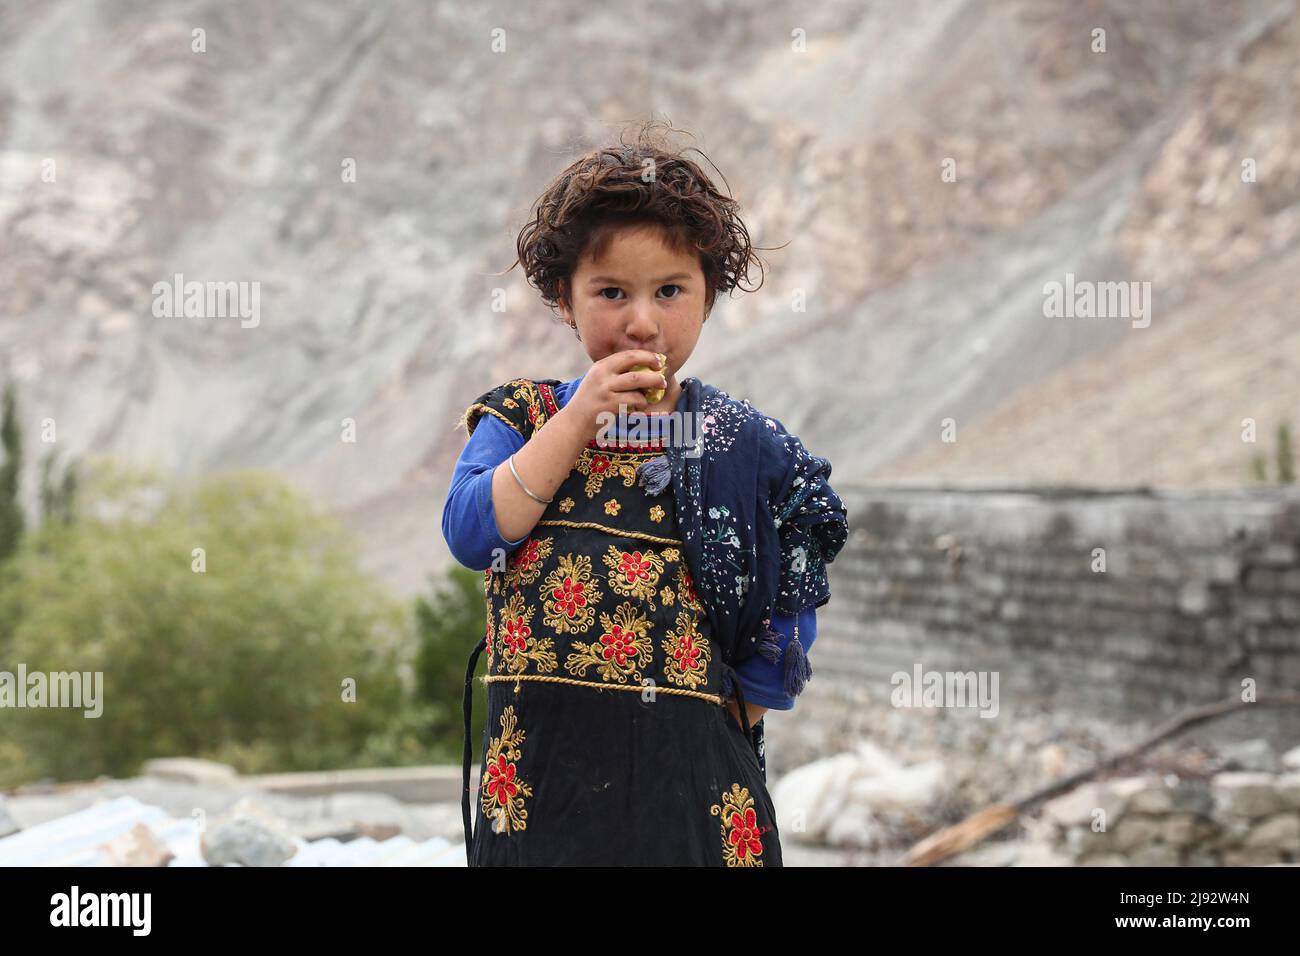 Ein Porträt eines Balti-Mädchens in Thang, dem letzten Dorf im Bezirk Leh, von Ladakh. Das Thang-Dorf wurde als Folge des Indo-Pakistan-Krieges 1971 von Pakistan beschlagnahmt. Pharnu und Thang sind Zwillingsdörfer, in denen Familienmitglieder auf beiden Seiten der Dörfer des Nachbarlandes leben. Das Thang-Dorf wurde als Folge des Indo-Pakistan-Krieges 1971 von Pakistan beschlagnahmt. Pharnu und Thang sind Zwillingsdörfer, in denen Familienmitglieder auf beiden Seiten der Dörfer des Nachbarlandes leben. Stockfoto